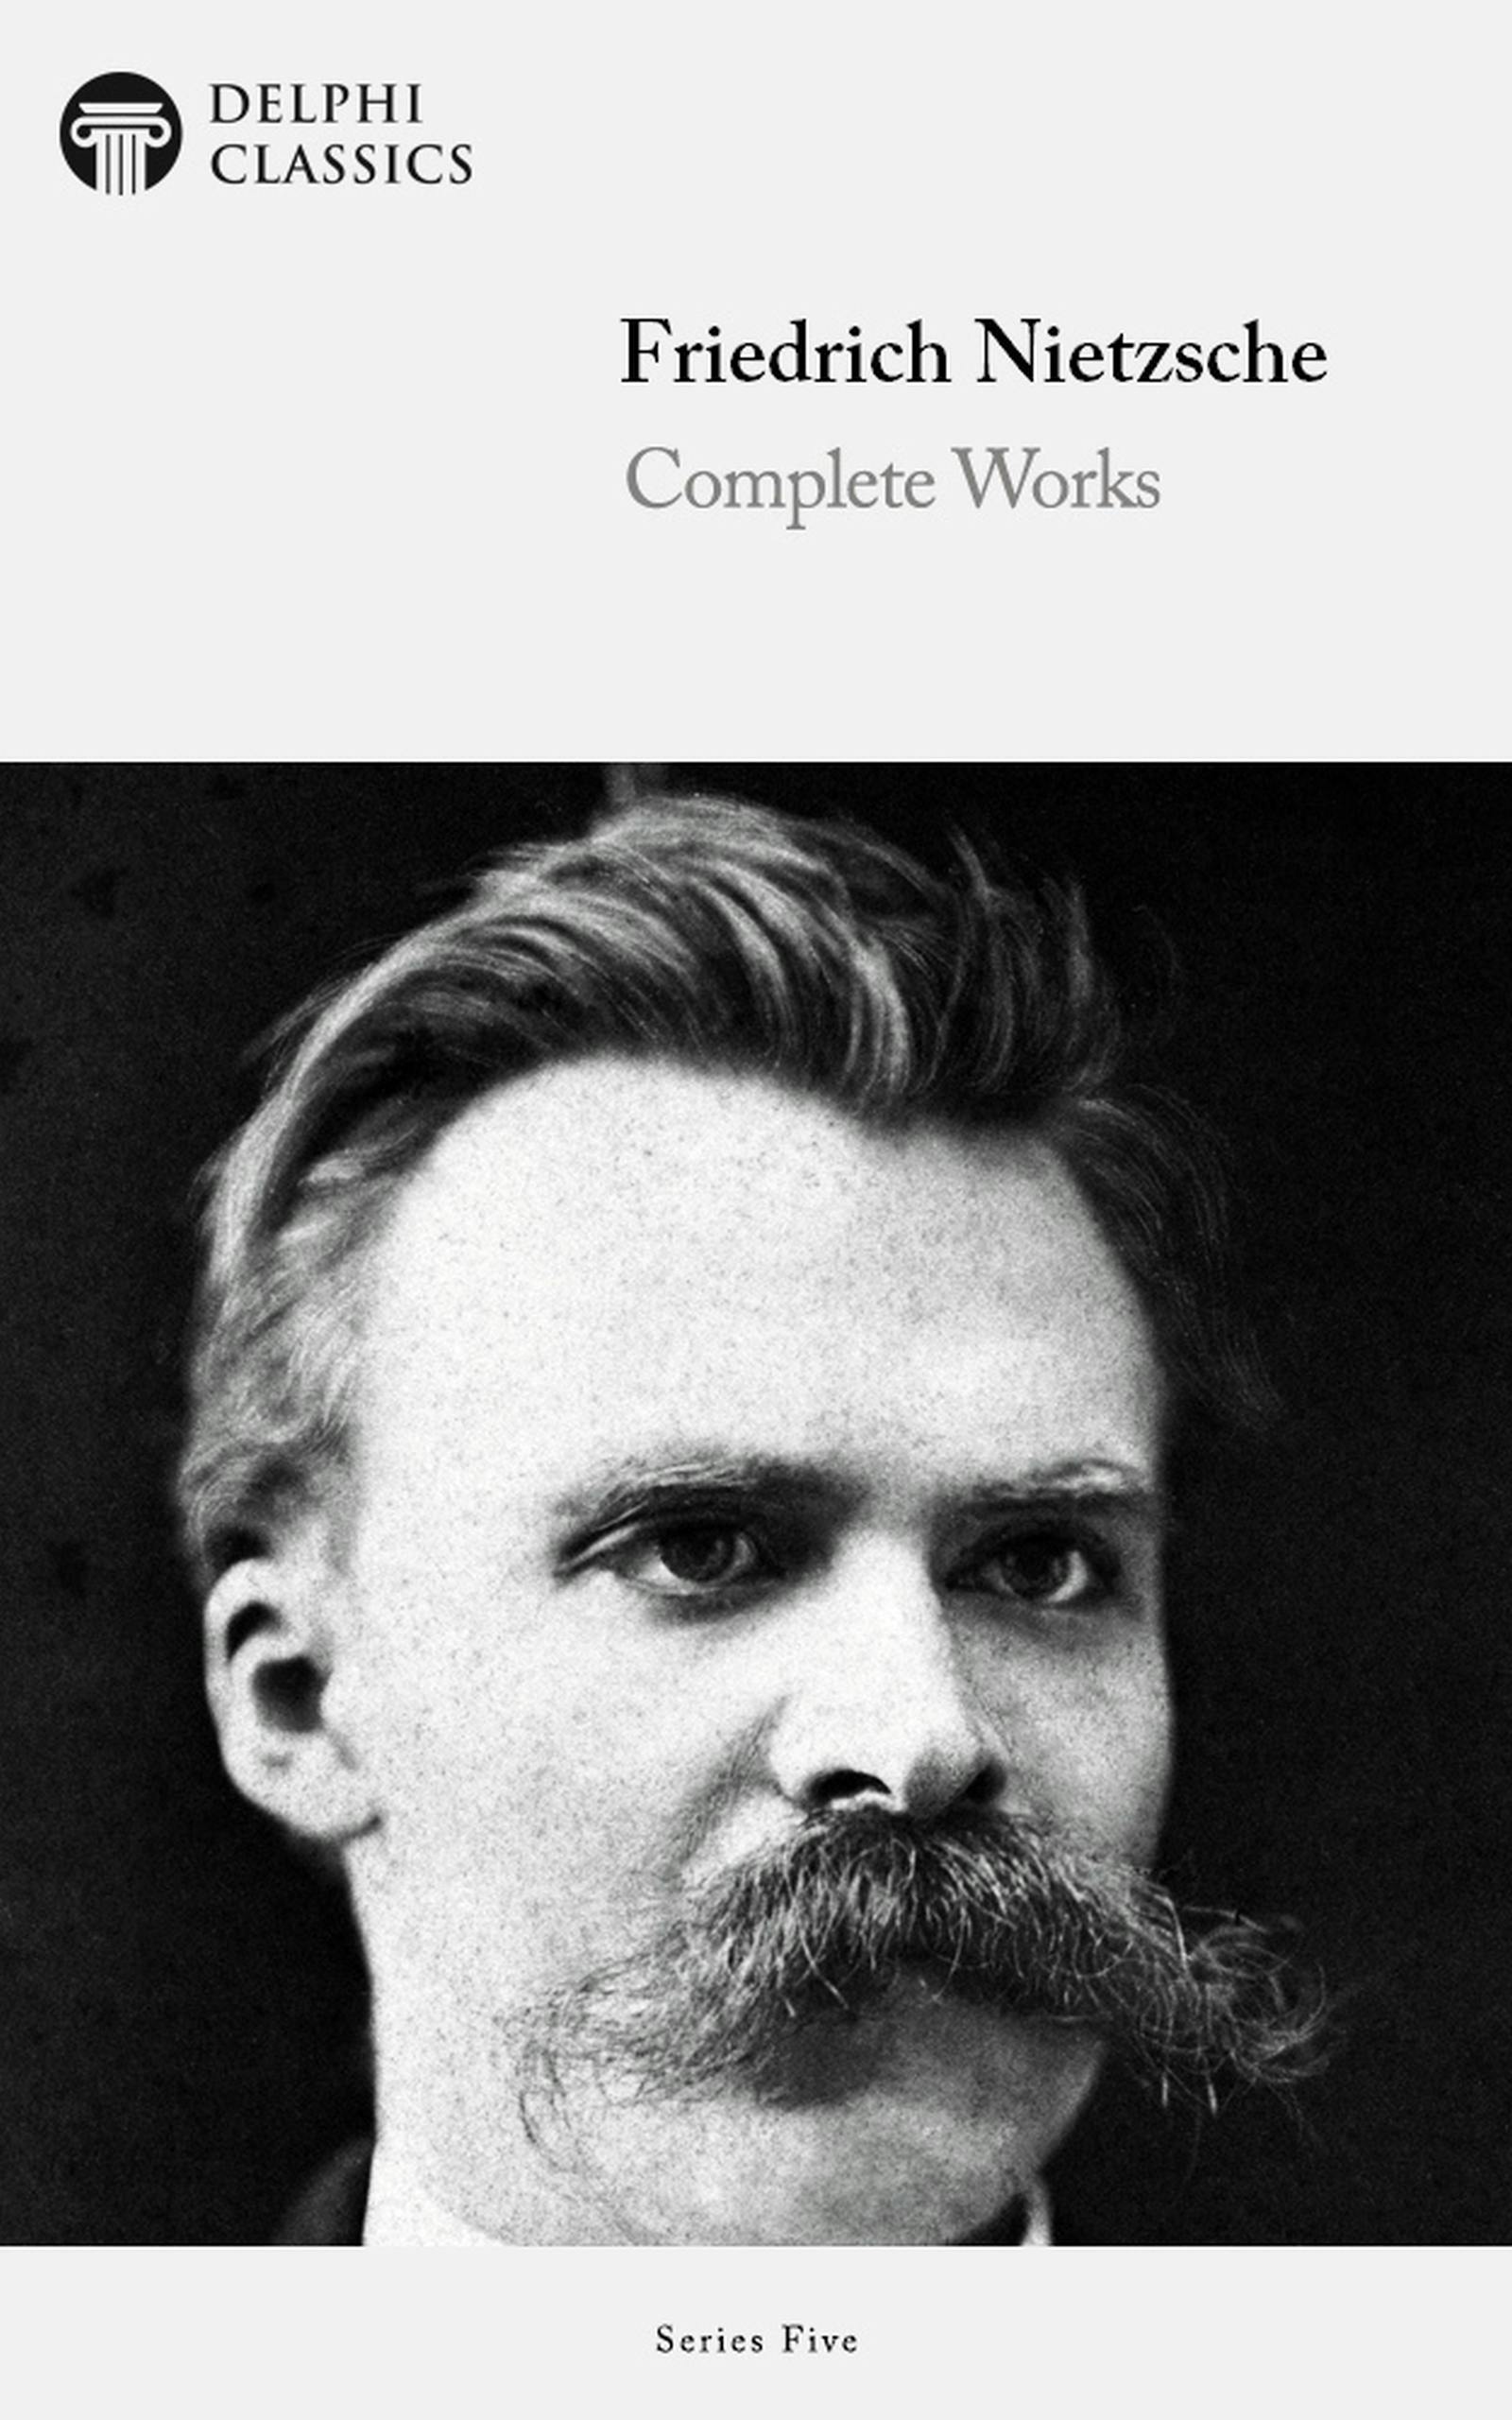 Delphi Complete Works of Friedrich Nietzsche (Illustrated) - Friedrich Nietzsche